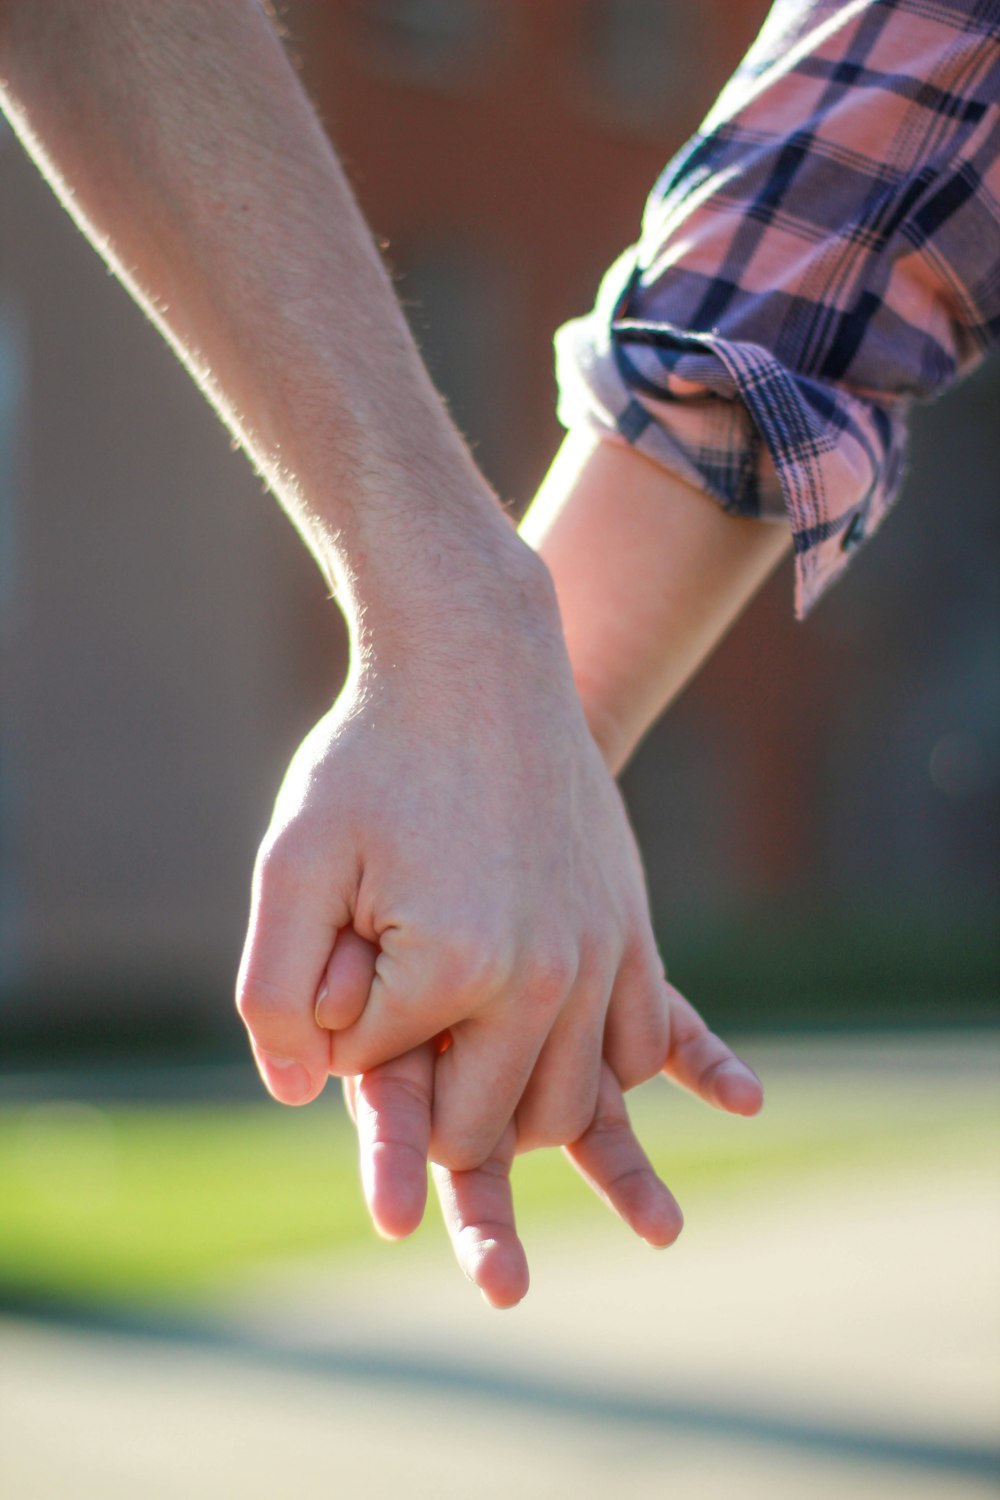 손을 잡고 있는 두 사람의 선택적 초점 사진